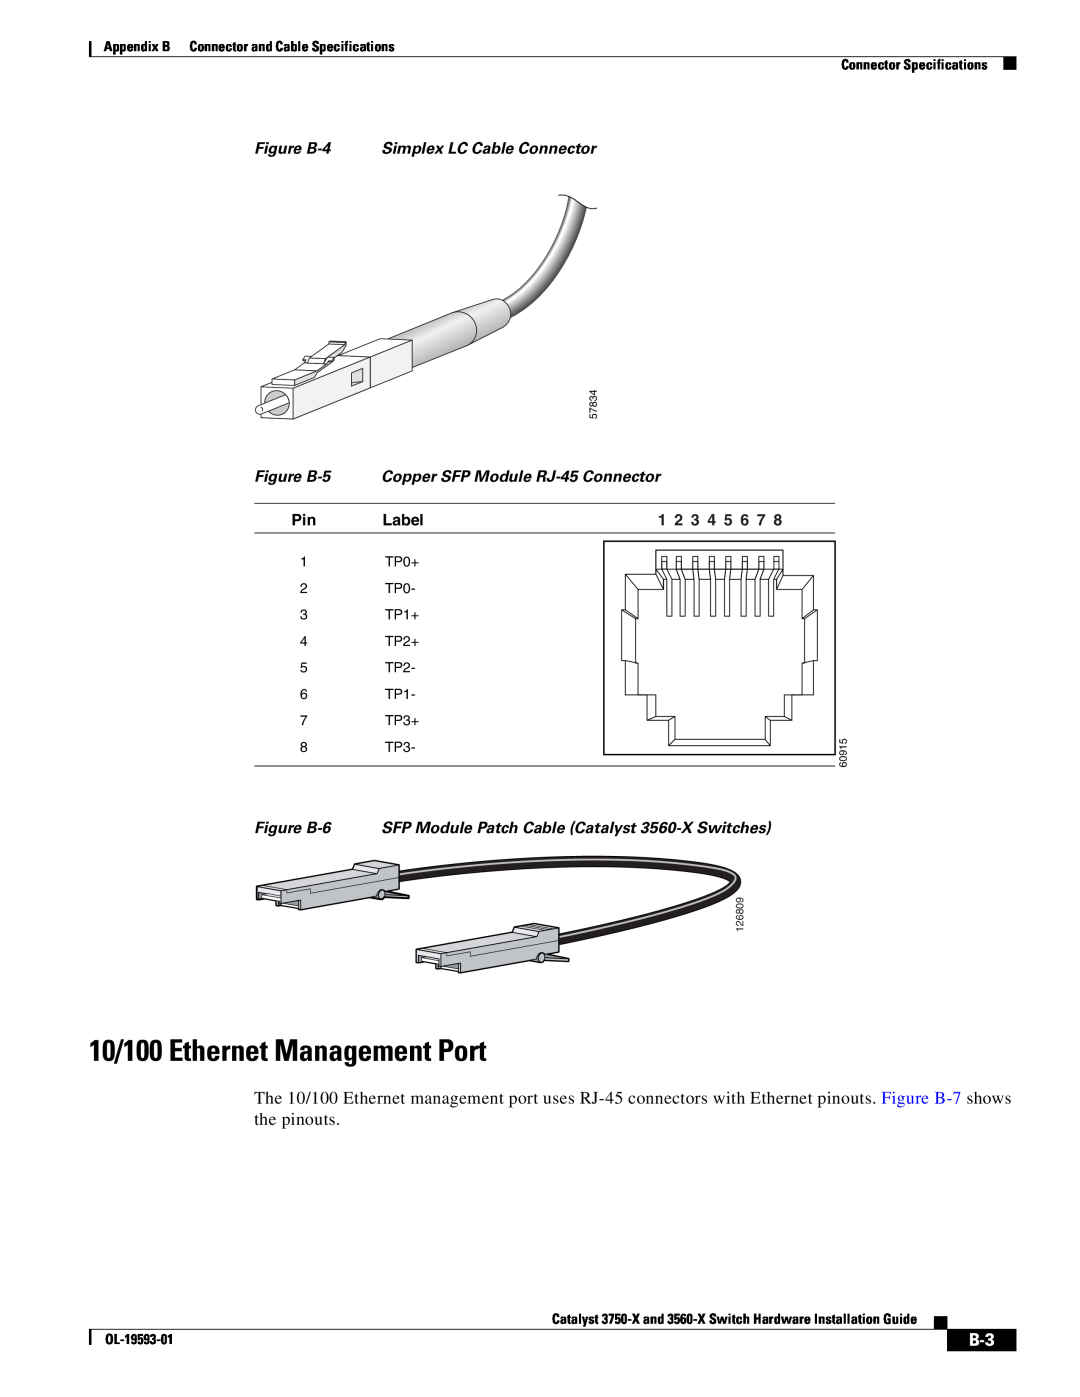 Cisco Systems 3560-X 10/100 Ethernet Management Port, Figure B-4 Simplex LC Cable Connector, Figure B-5, Label, TP0+, TP1+ 